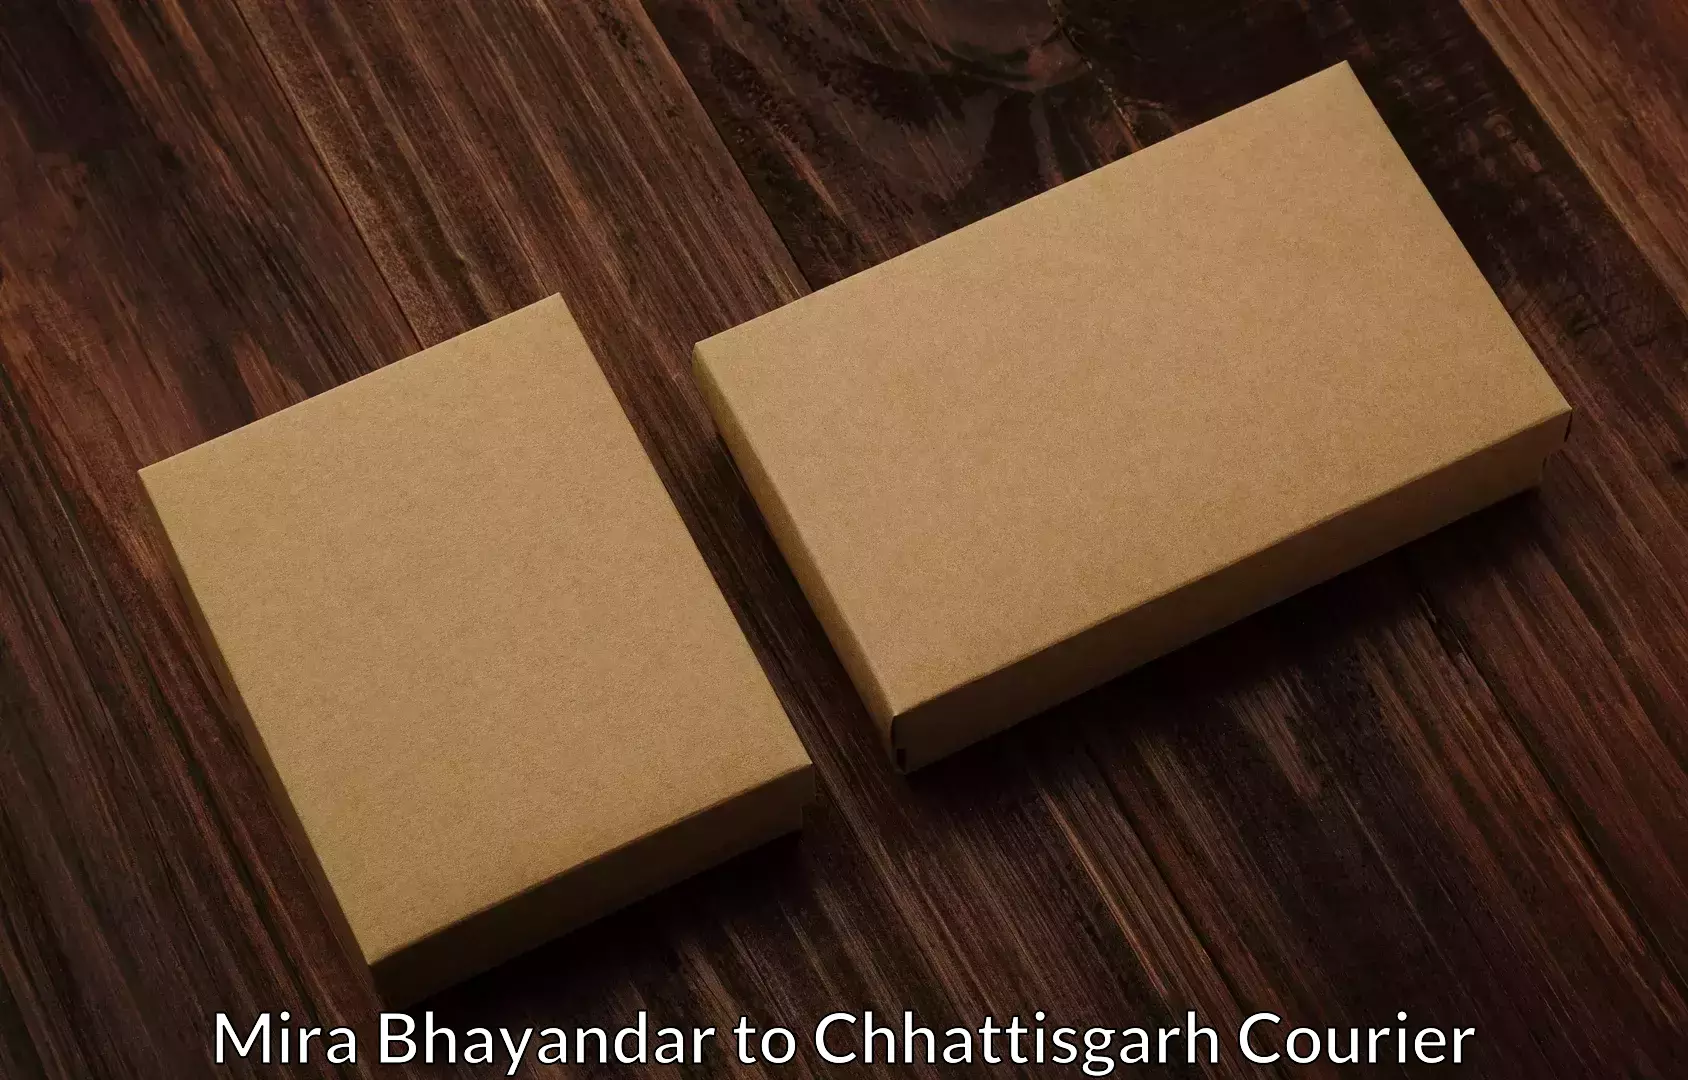 Efficient moving strategies Mira Bhayandar to Raigarh Chhattisgarh